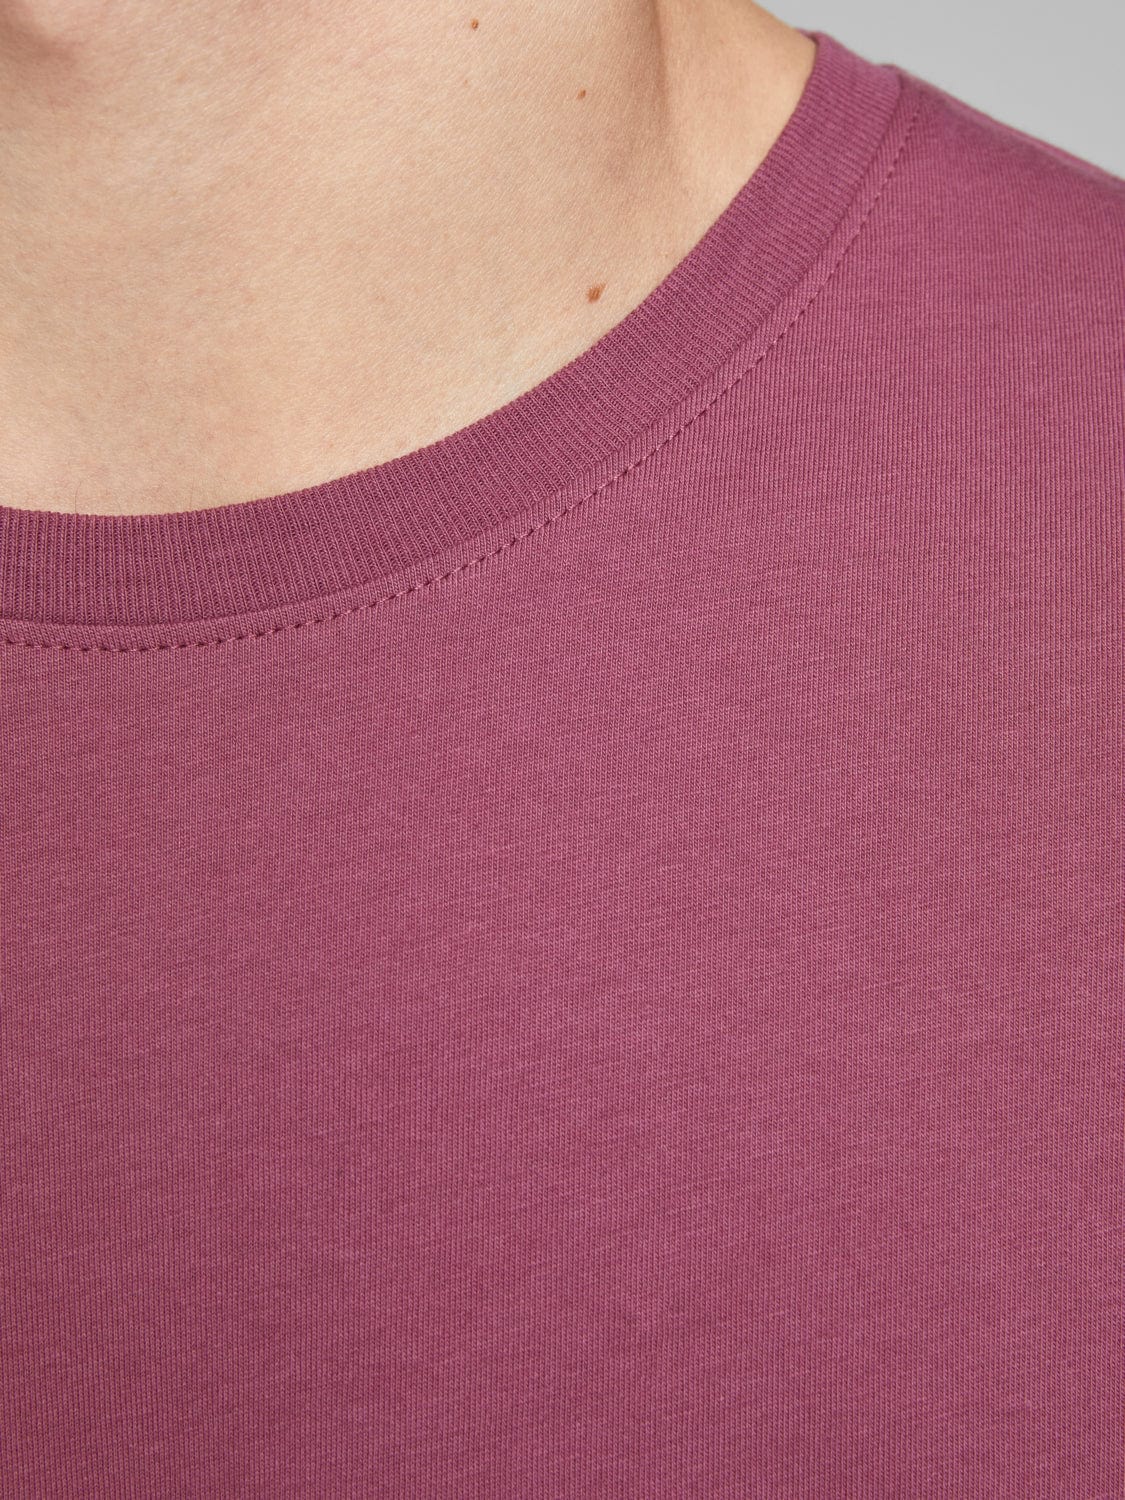 Camiseta Basic - Rosa